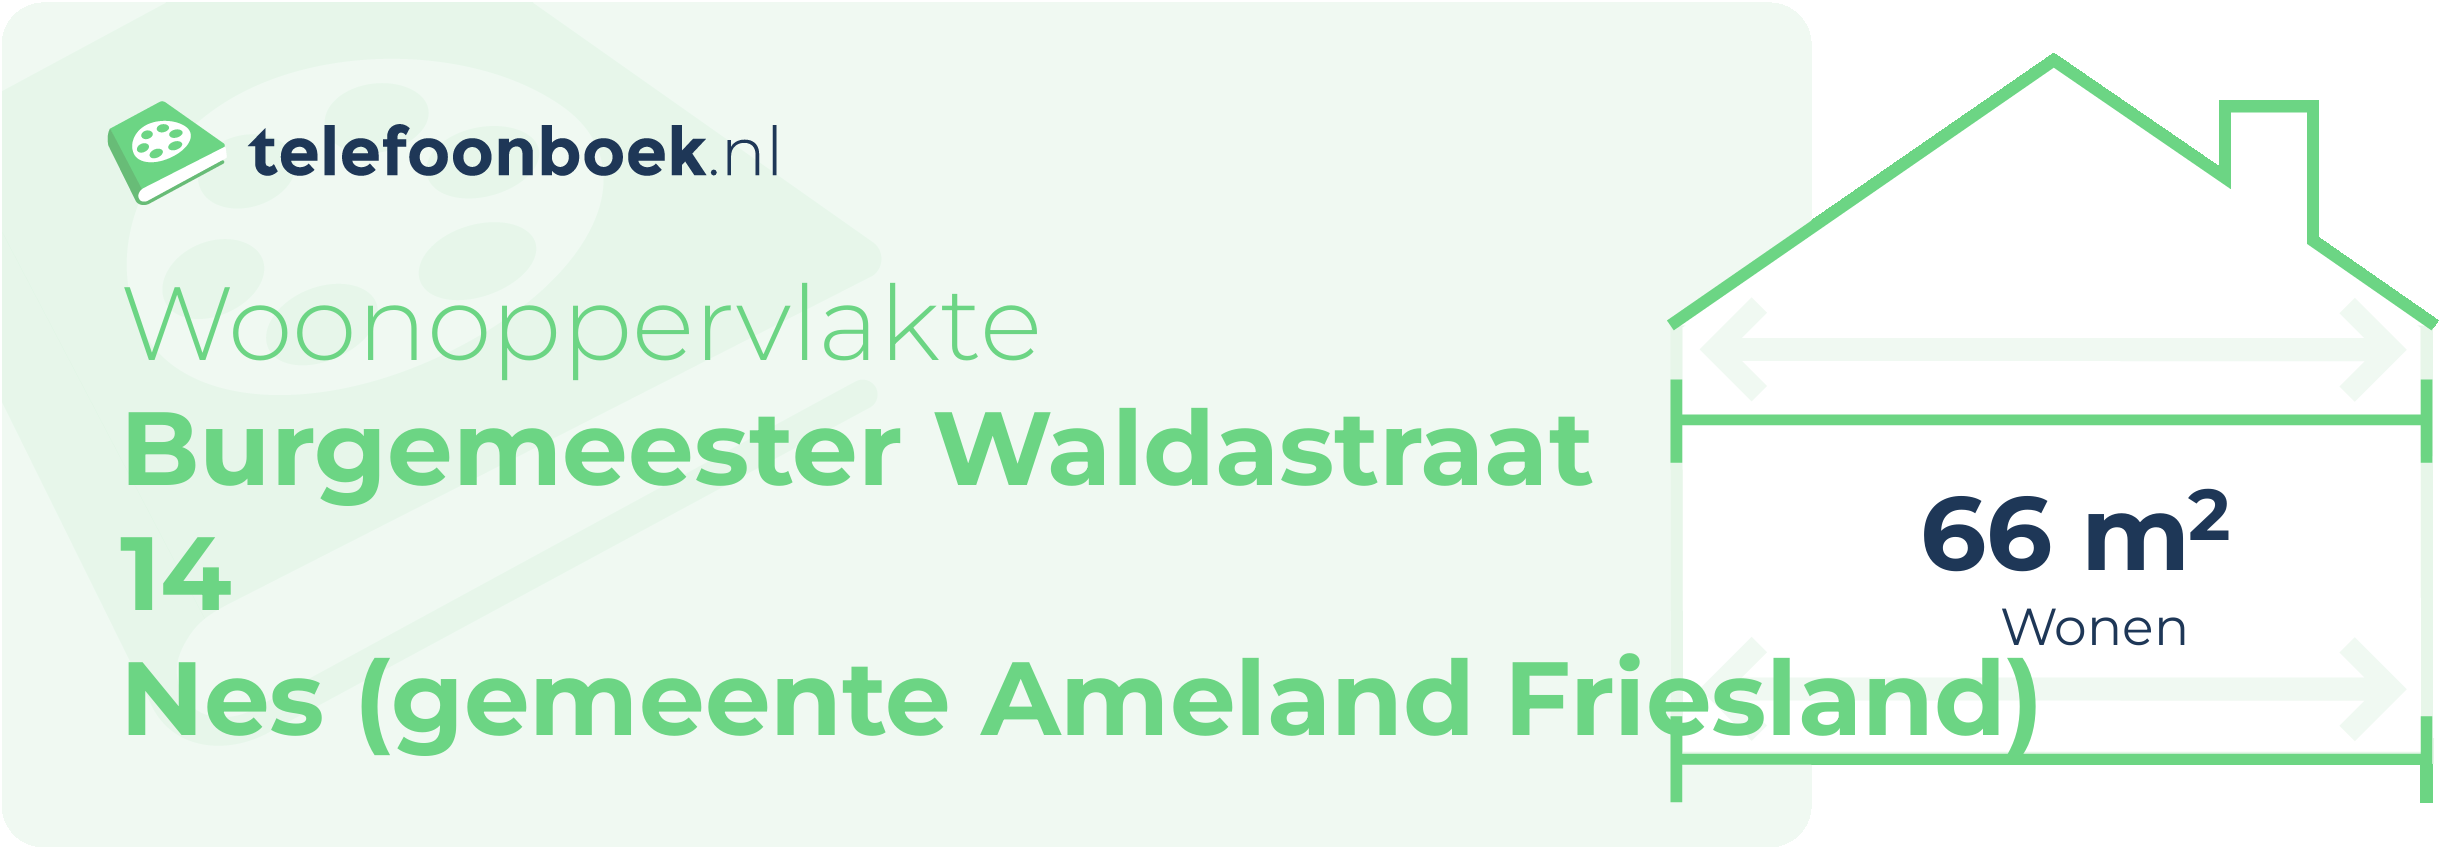 Woonoppervlakte Burgemeester Waldastraat 14 Nes (gemeente Ameland Friesland)